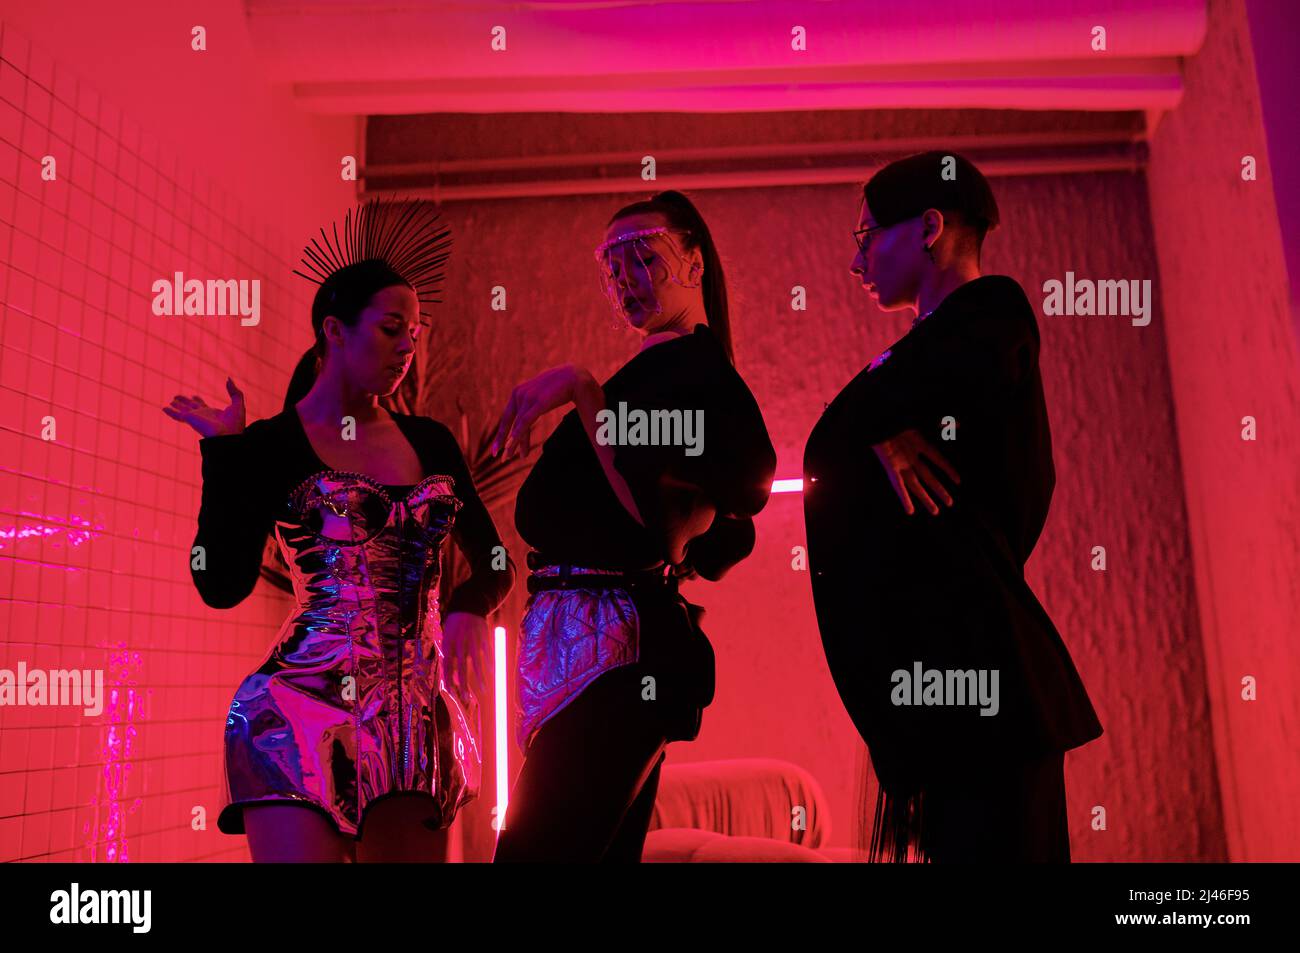 Drei Jugendliche Performer in noblem Gewand, die im modernen Nachtclub modischen Tanz vorführen, während sie vor der Kamera stehen Stockfoto